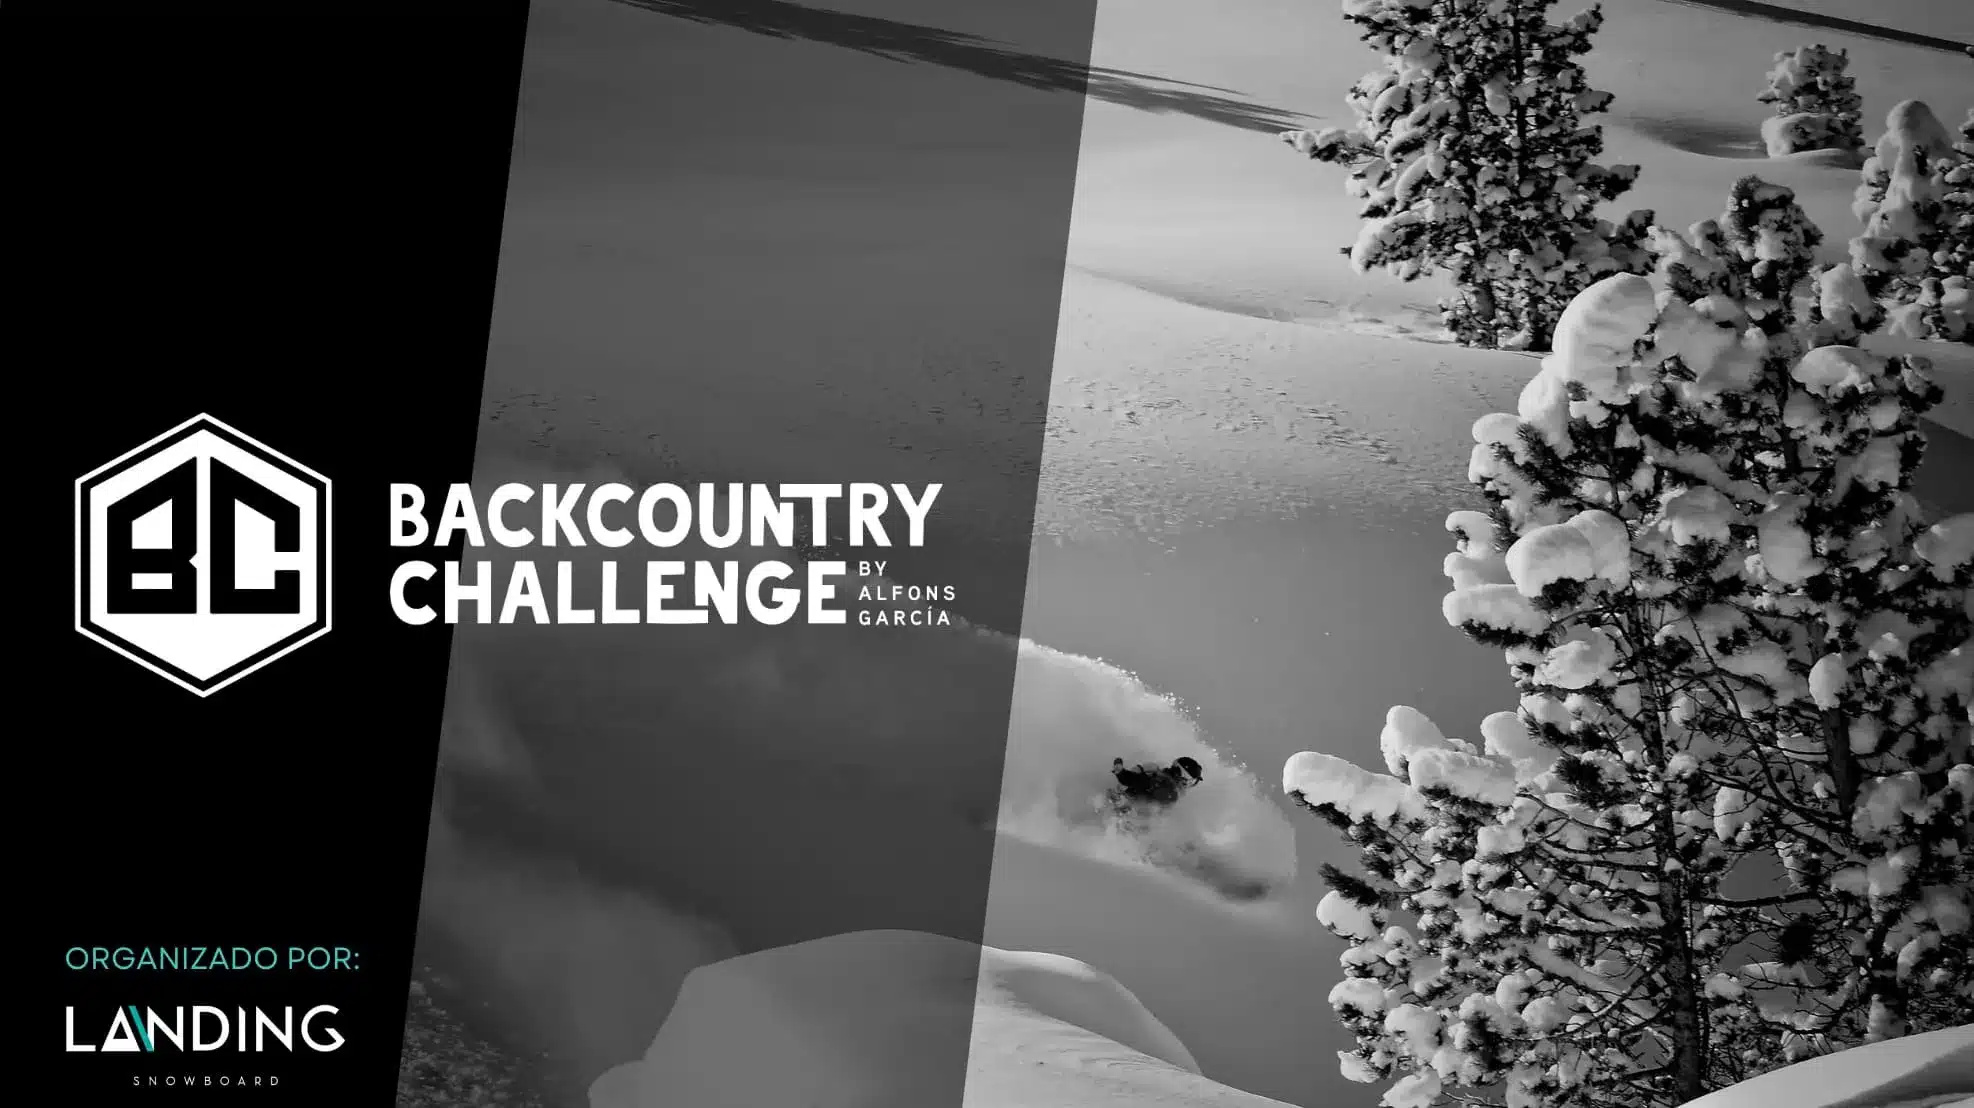 Abierto el periodo de espera para el Backcountry Challenge by Alfons García